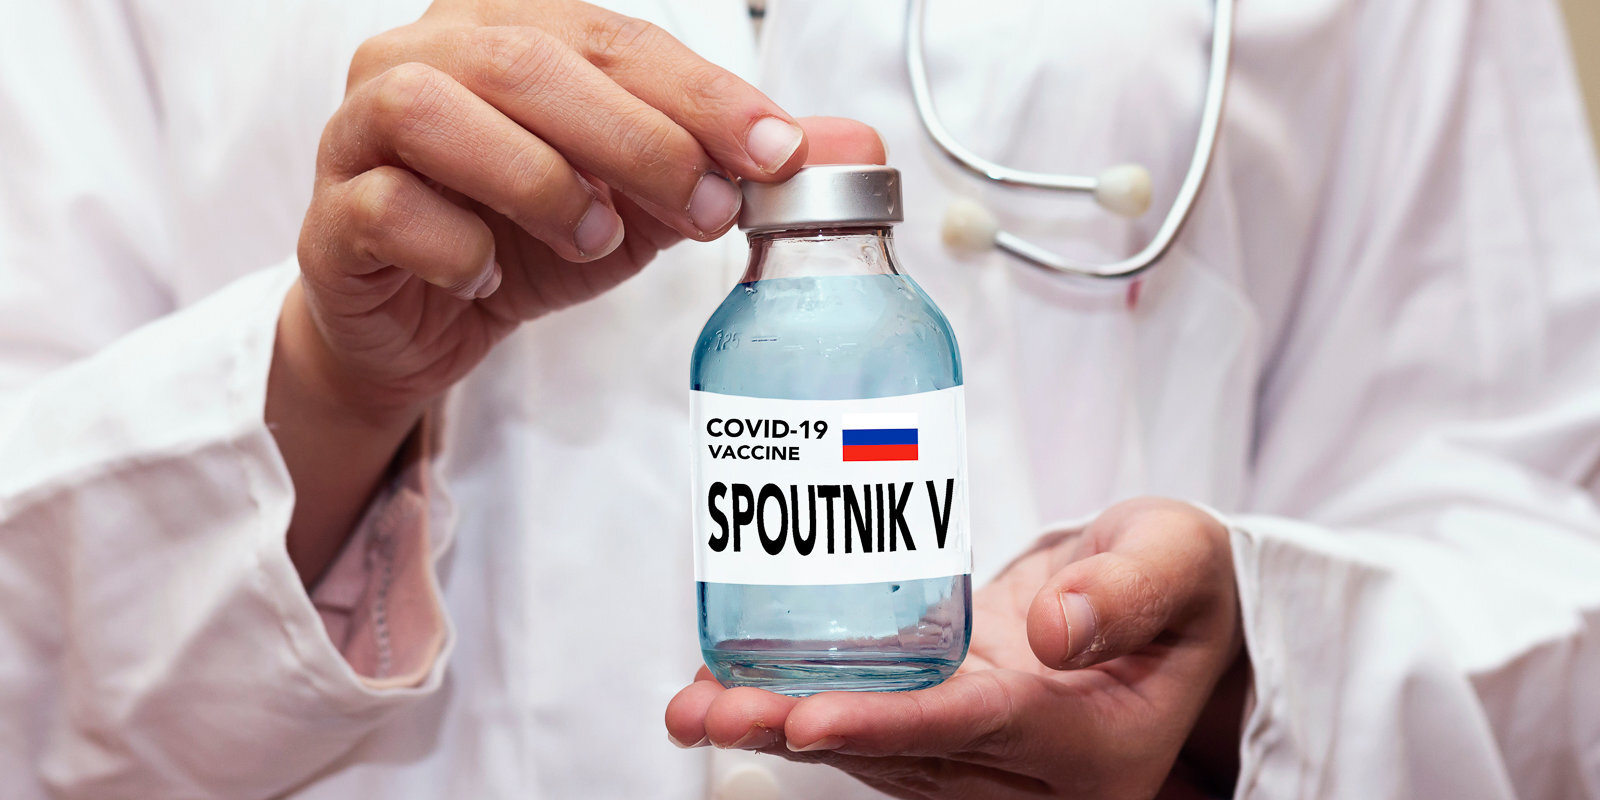 'Noteikumi rakstīti asinīm – tos nedrīkst pārkāpt!' Ko par Krievijas pirmo Covid-19 vakcīnu domā eksperti